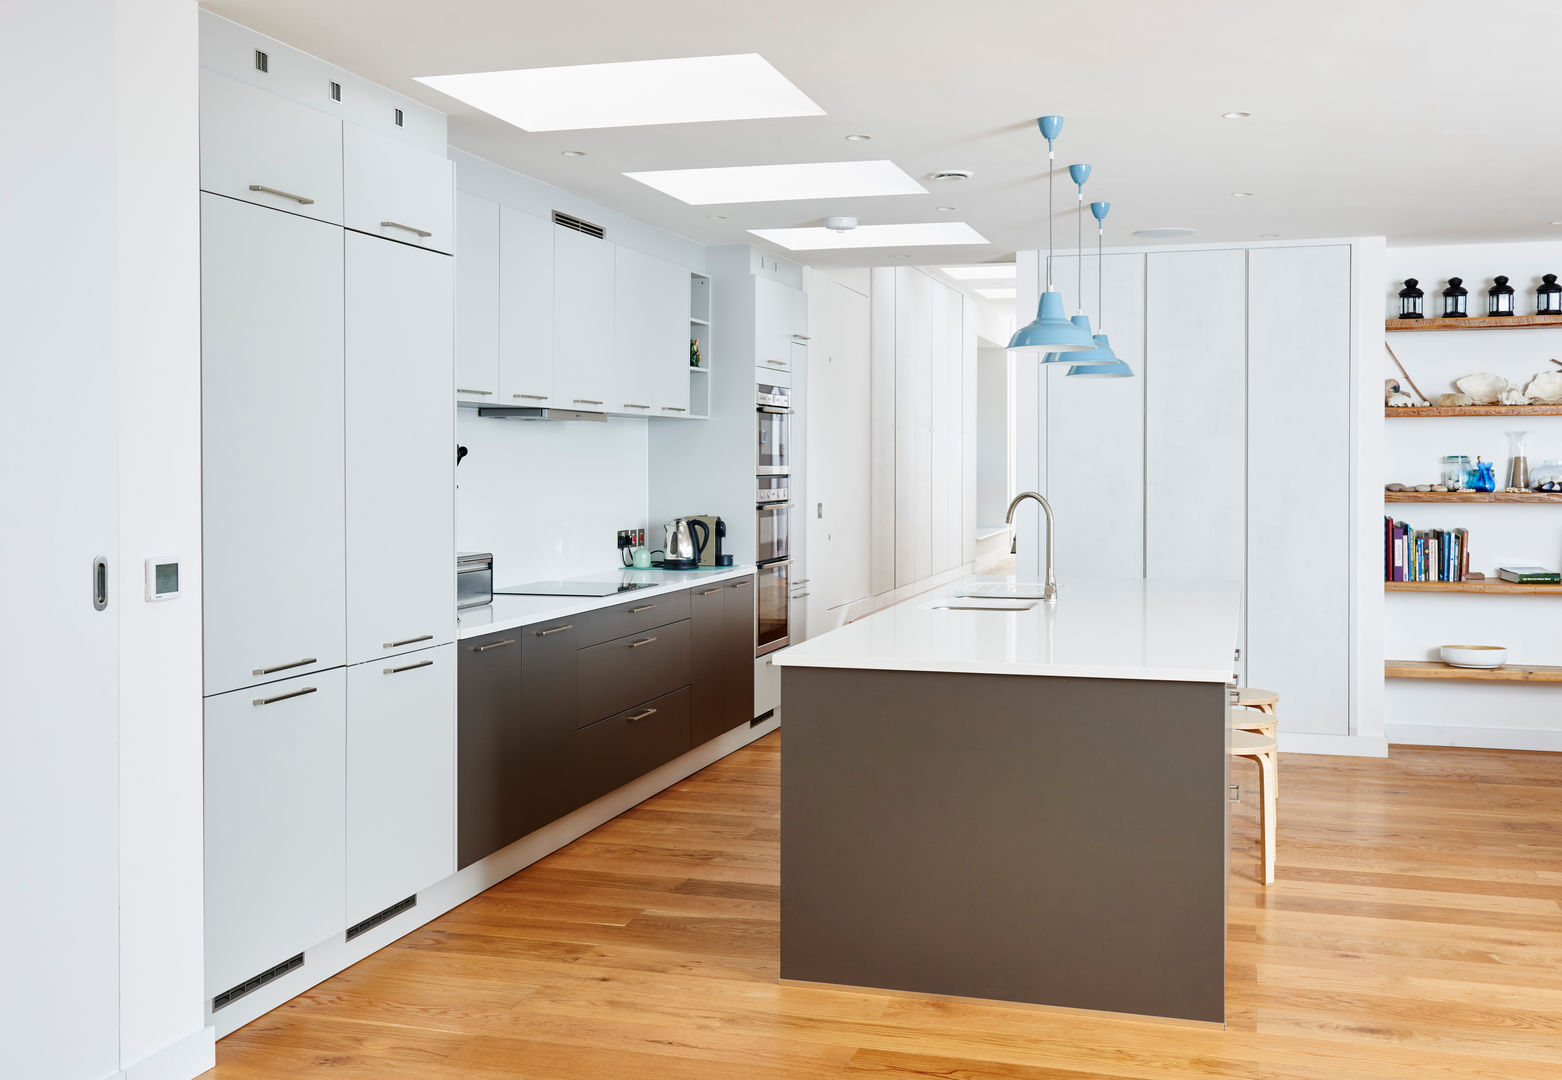 Sandhills Kitchen Barc Architects Cocinas modernas